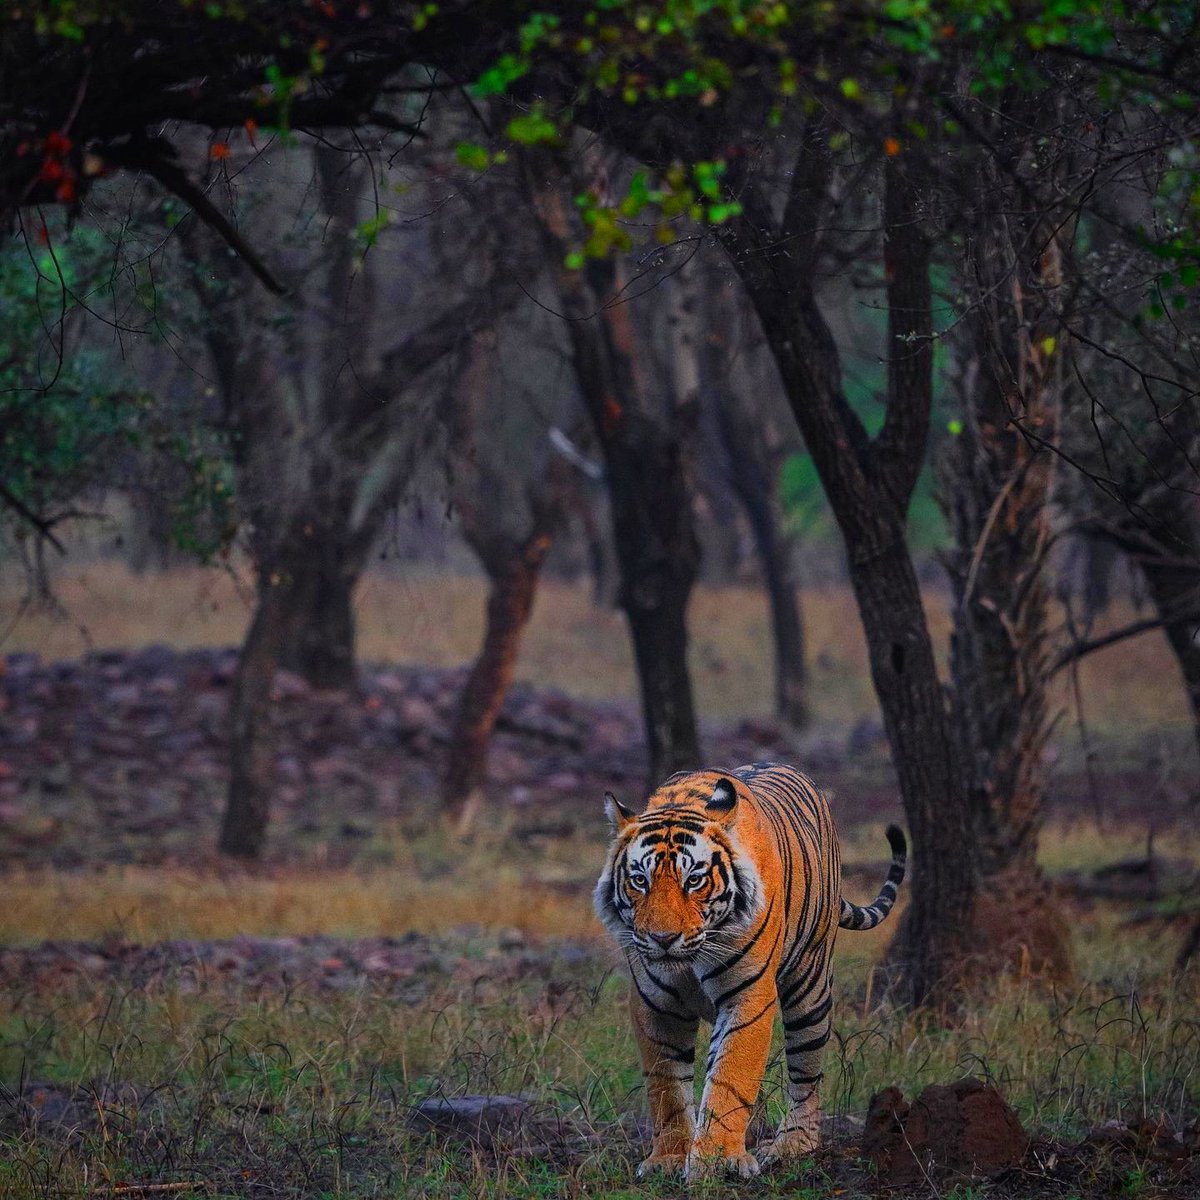 #wildlifephotography #wildlifephotography #wildanimals #tiger #tweetercircle #indianwildlife #stepintothewild